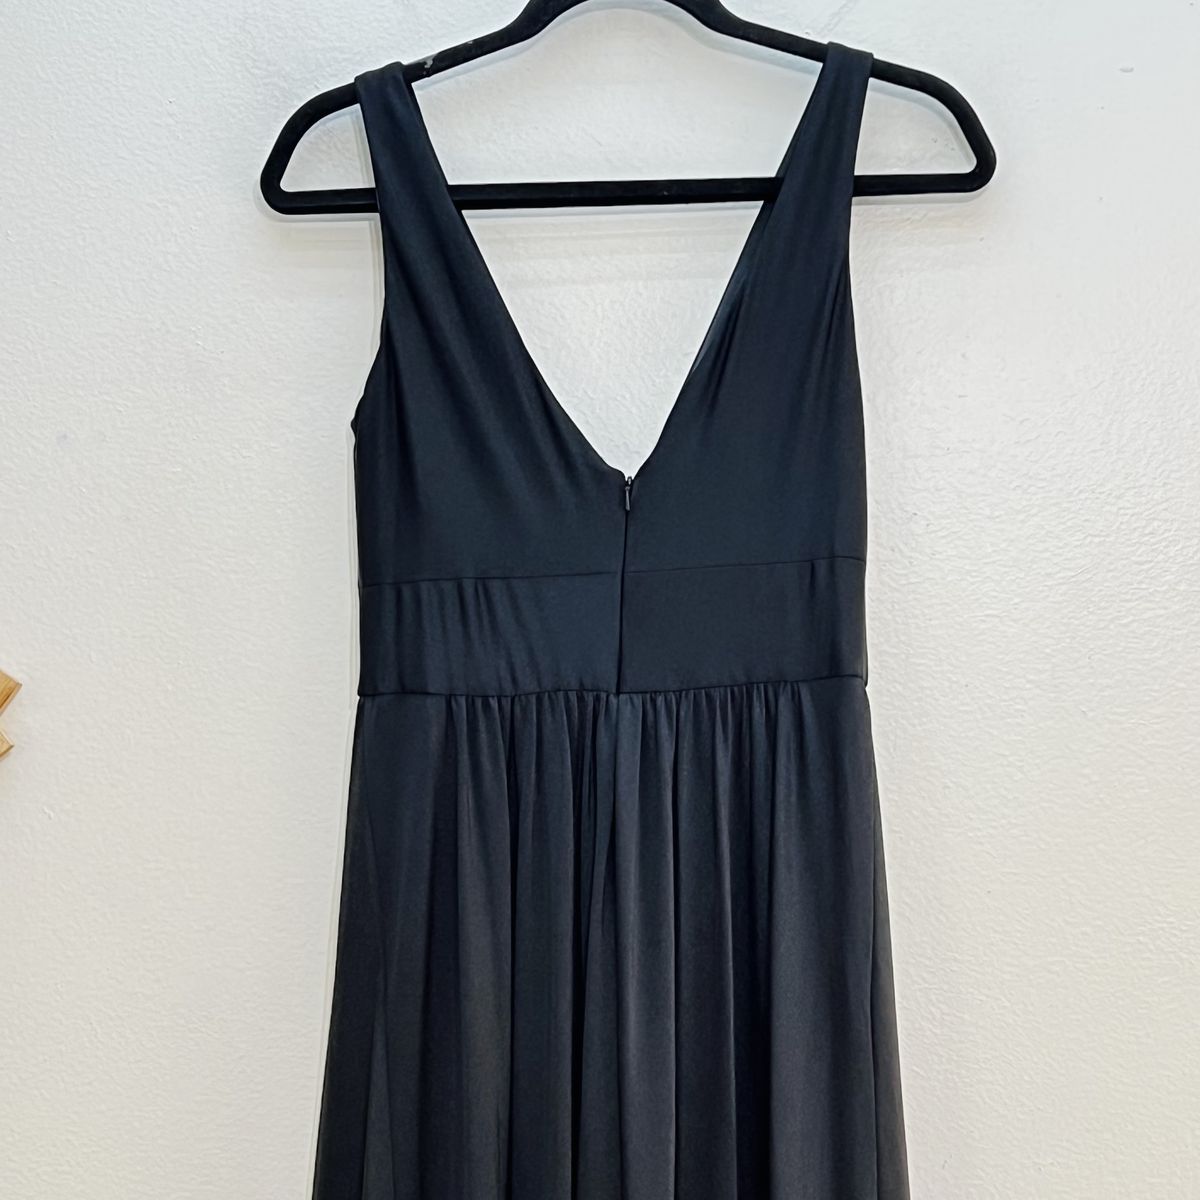 Style 28547 La Femme Size 12 Plunge Black Side Slit Dress on Queenly